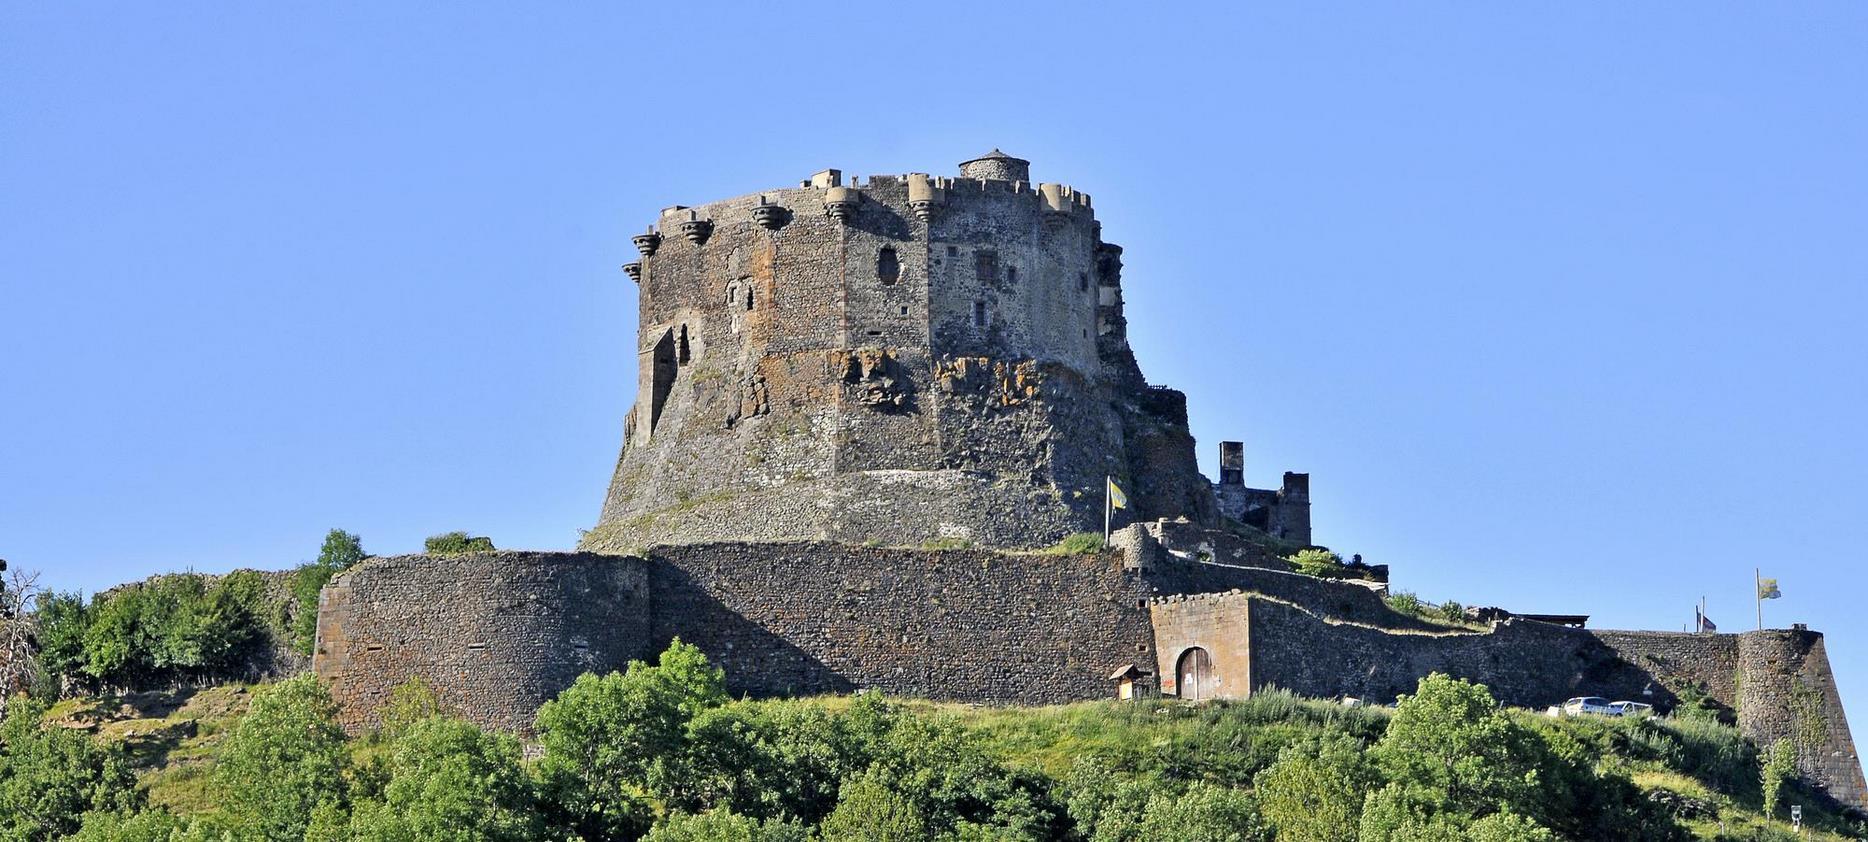 Super Besse - Château de Murol, forteresse du Moyen Age en Auvergne